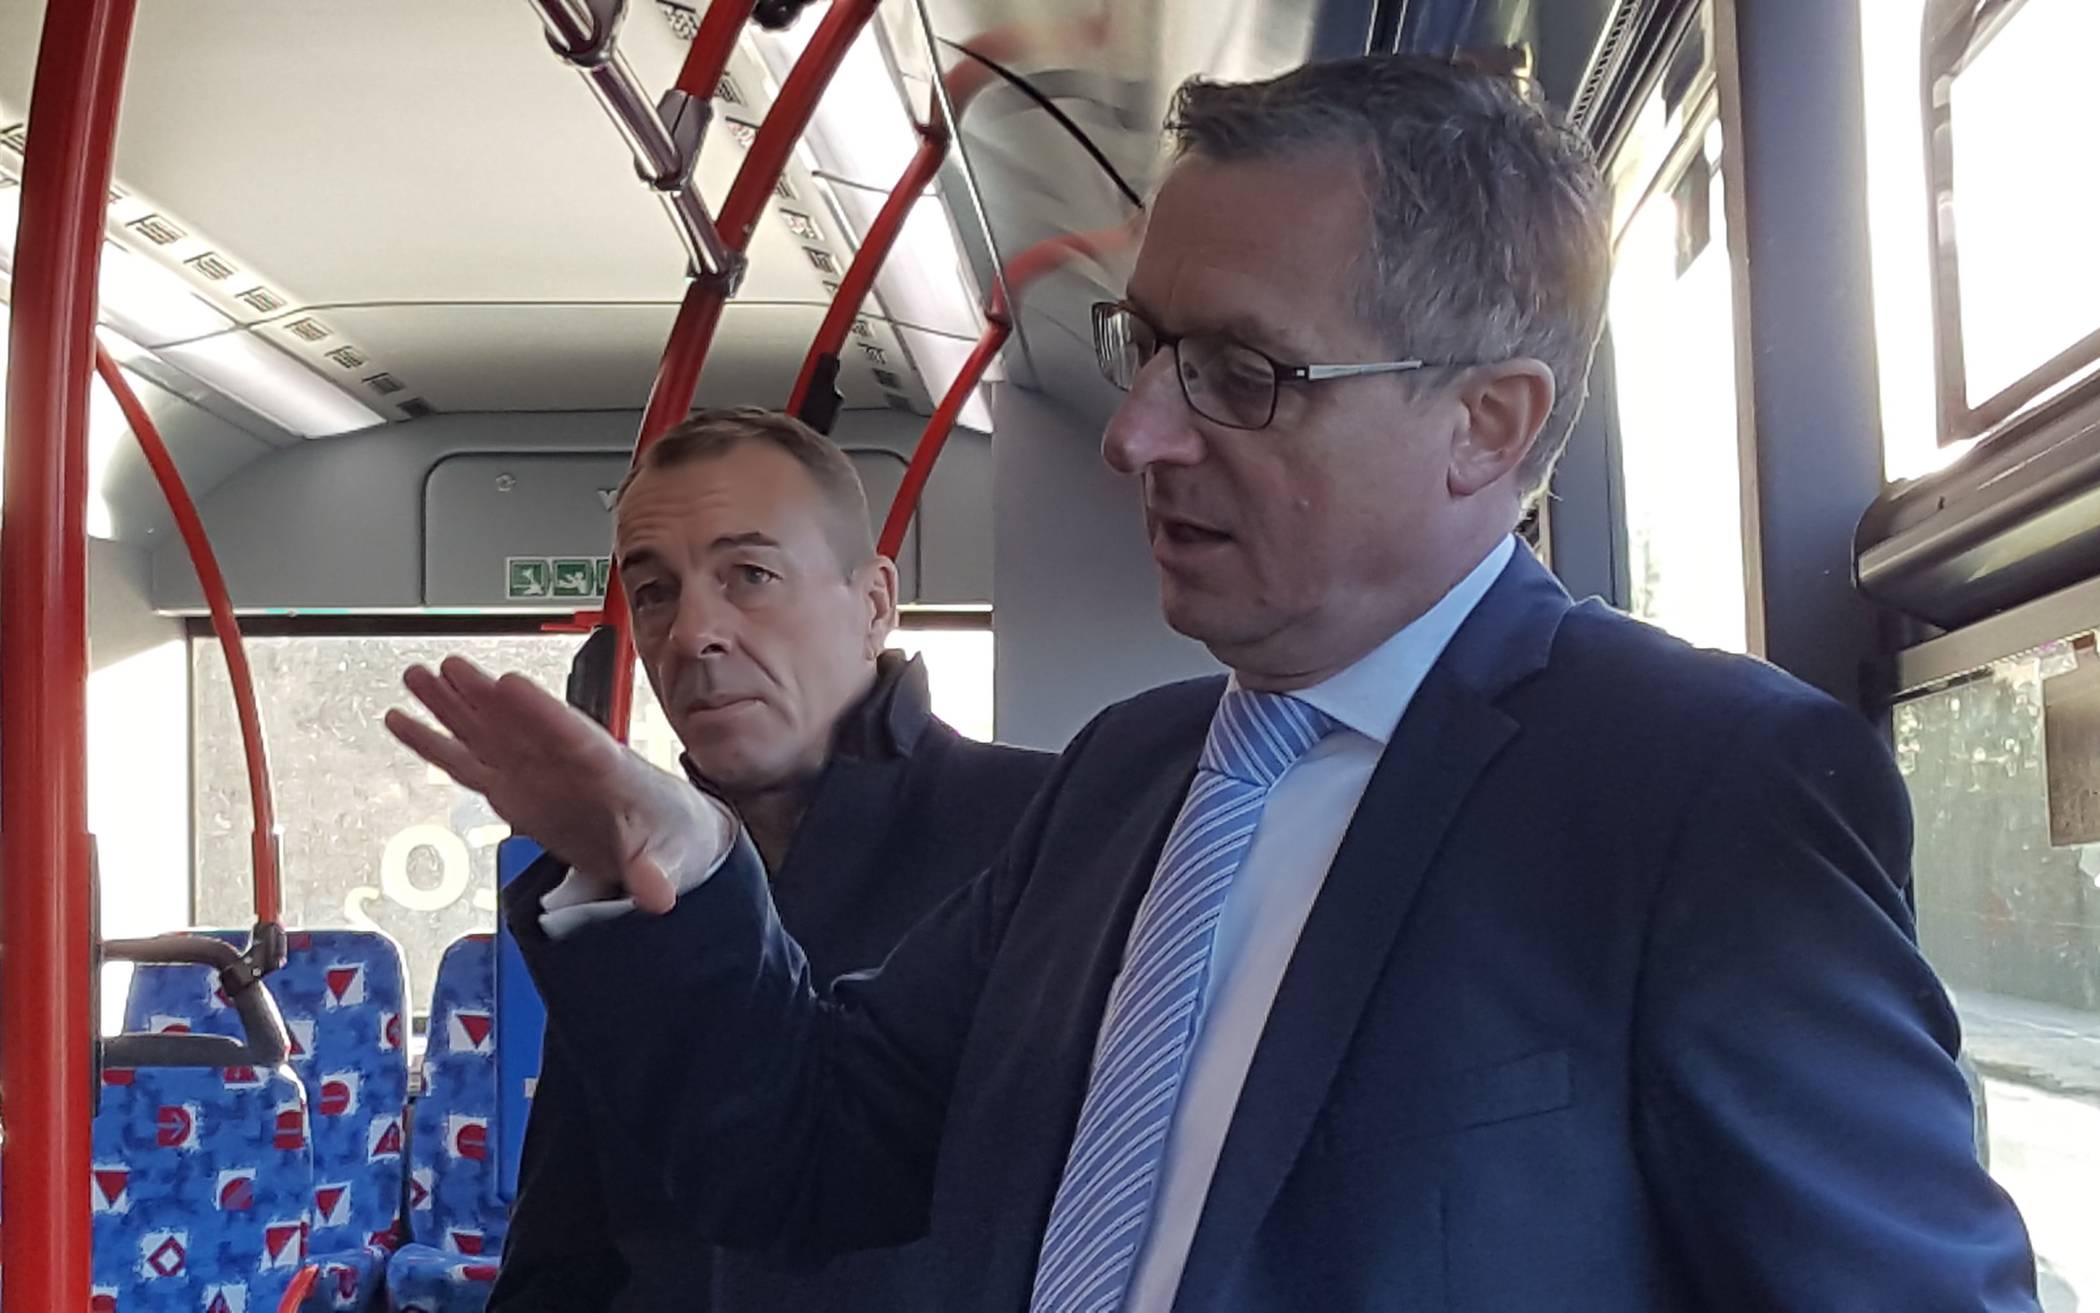  Technik-Leiter Andreas Meyer (links) und Verkehrs-Chef Ulrich Jaeger (rechts) von den Stadtwerken bei der Pressetestfahrt im neuen Wasserstoff-Bus.  